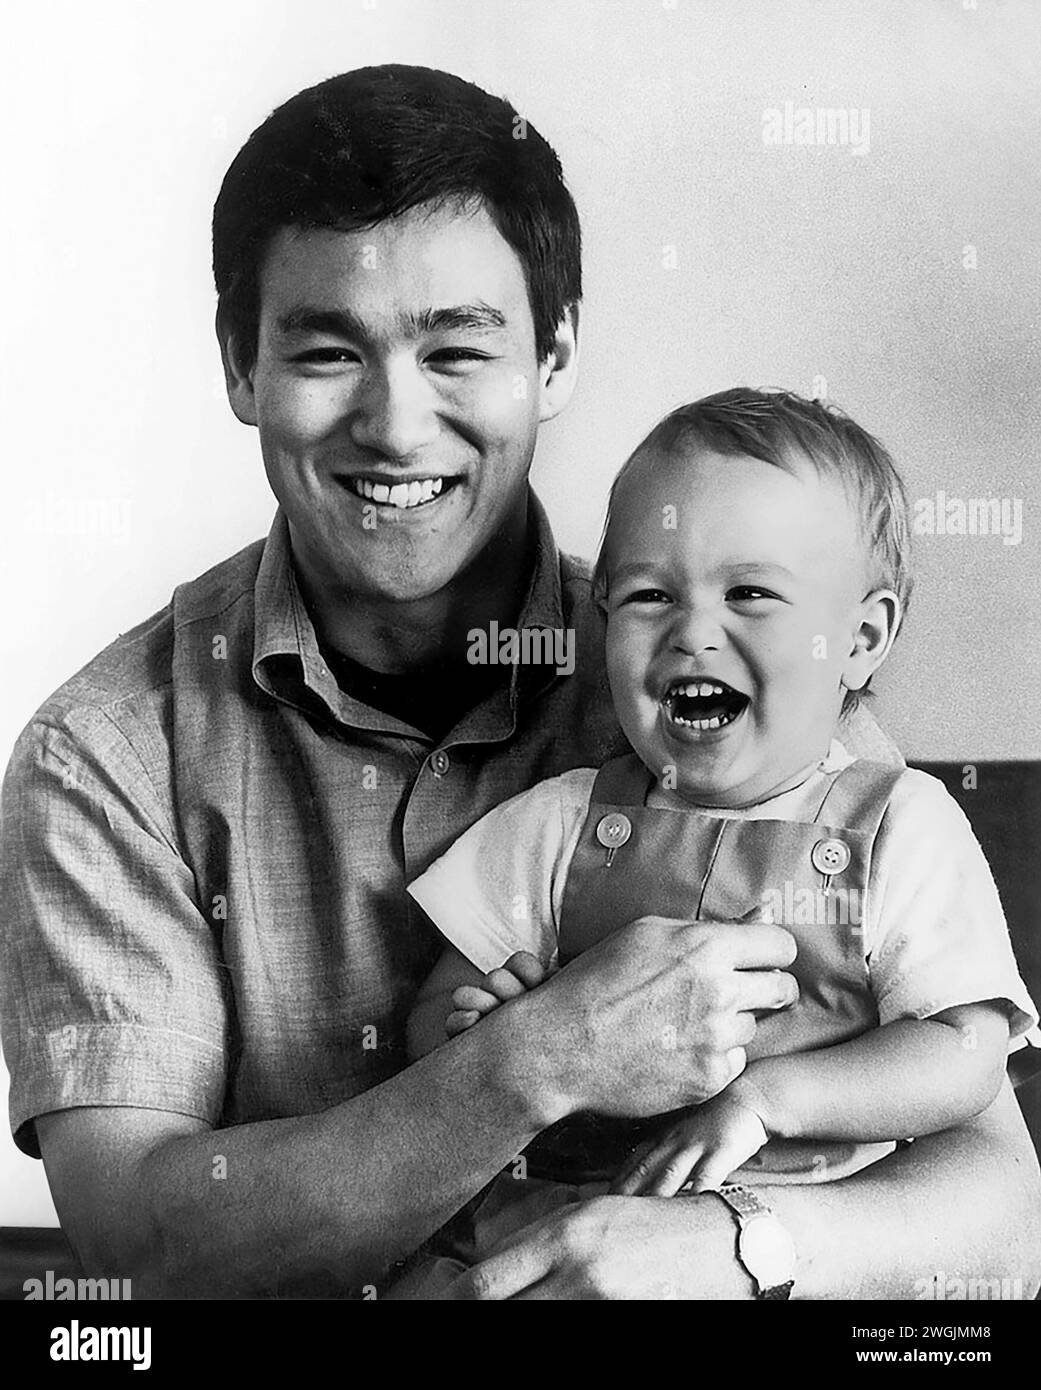 Bruce Lee. Ritratto dell'artista e attore marziale americano di Hong Kong, Bruce Lee (nato Lee Jun-fan, 1940-1973) con suo figlio, Brandon, 1966 Foto Stock